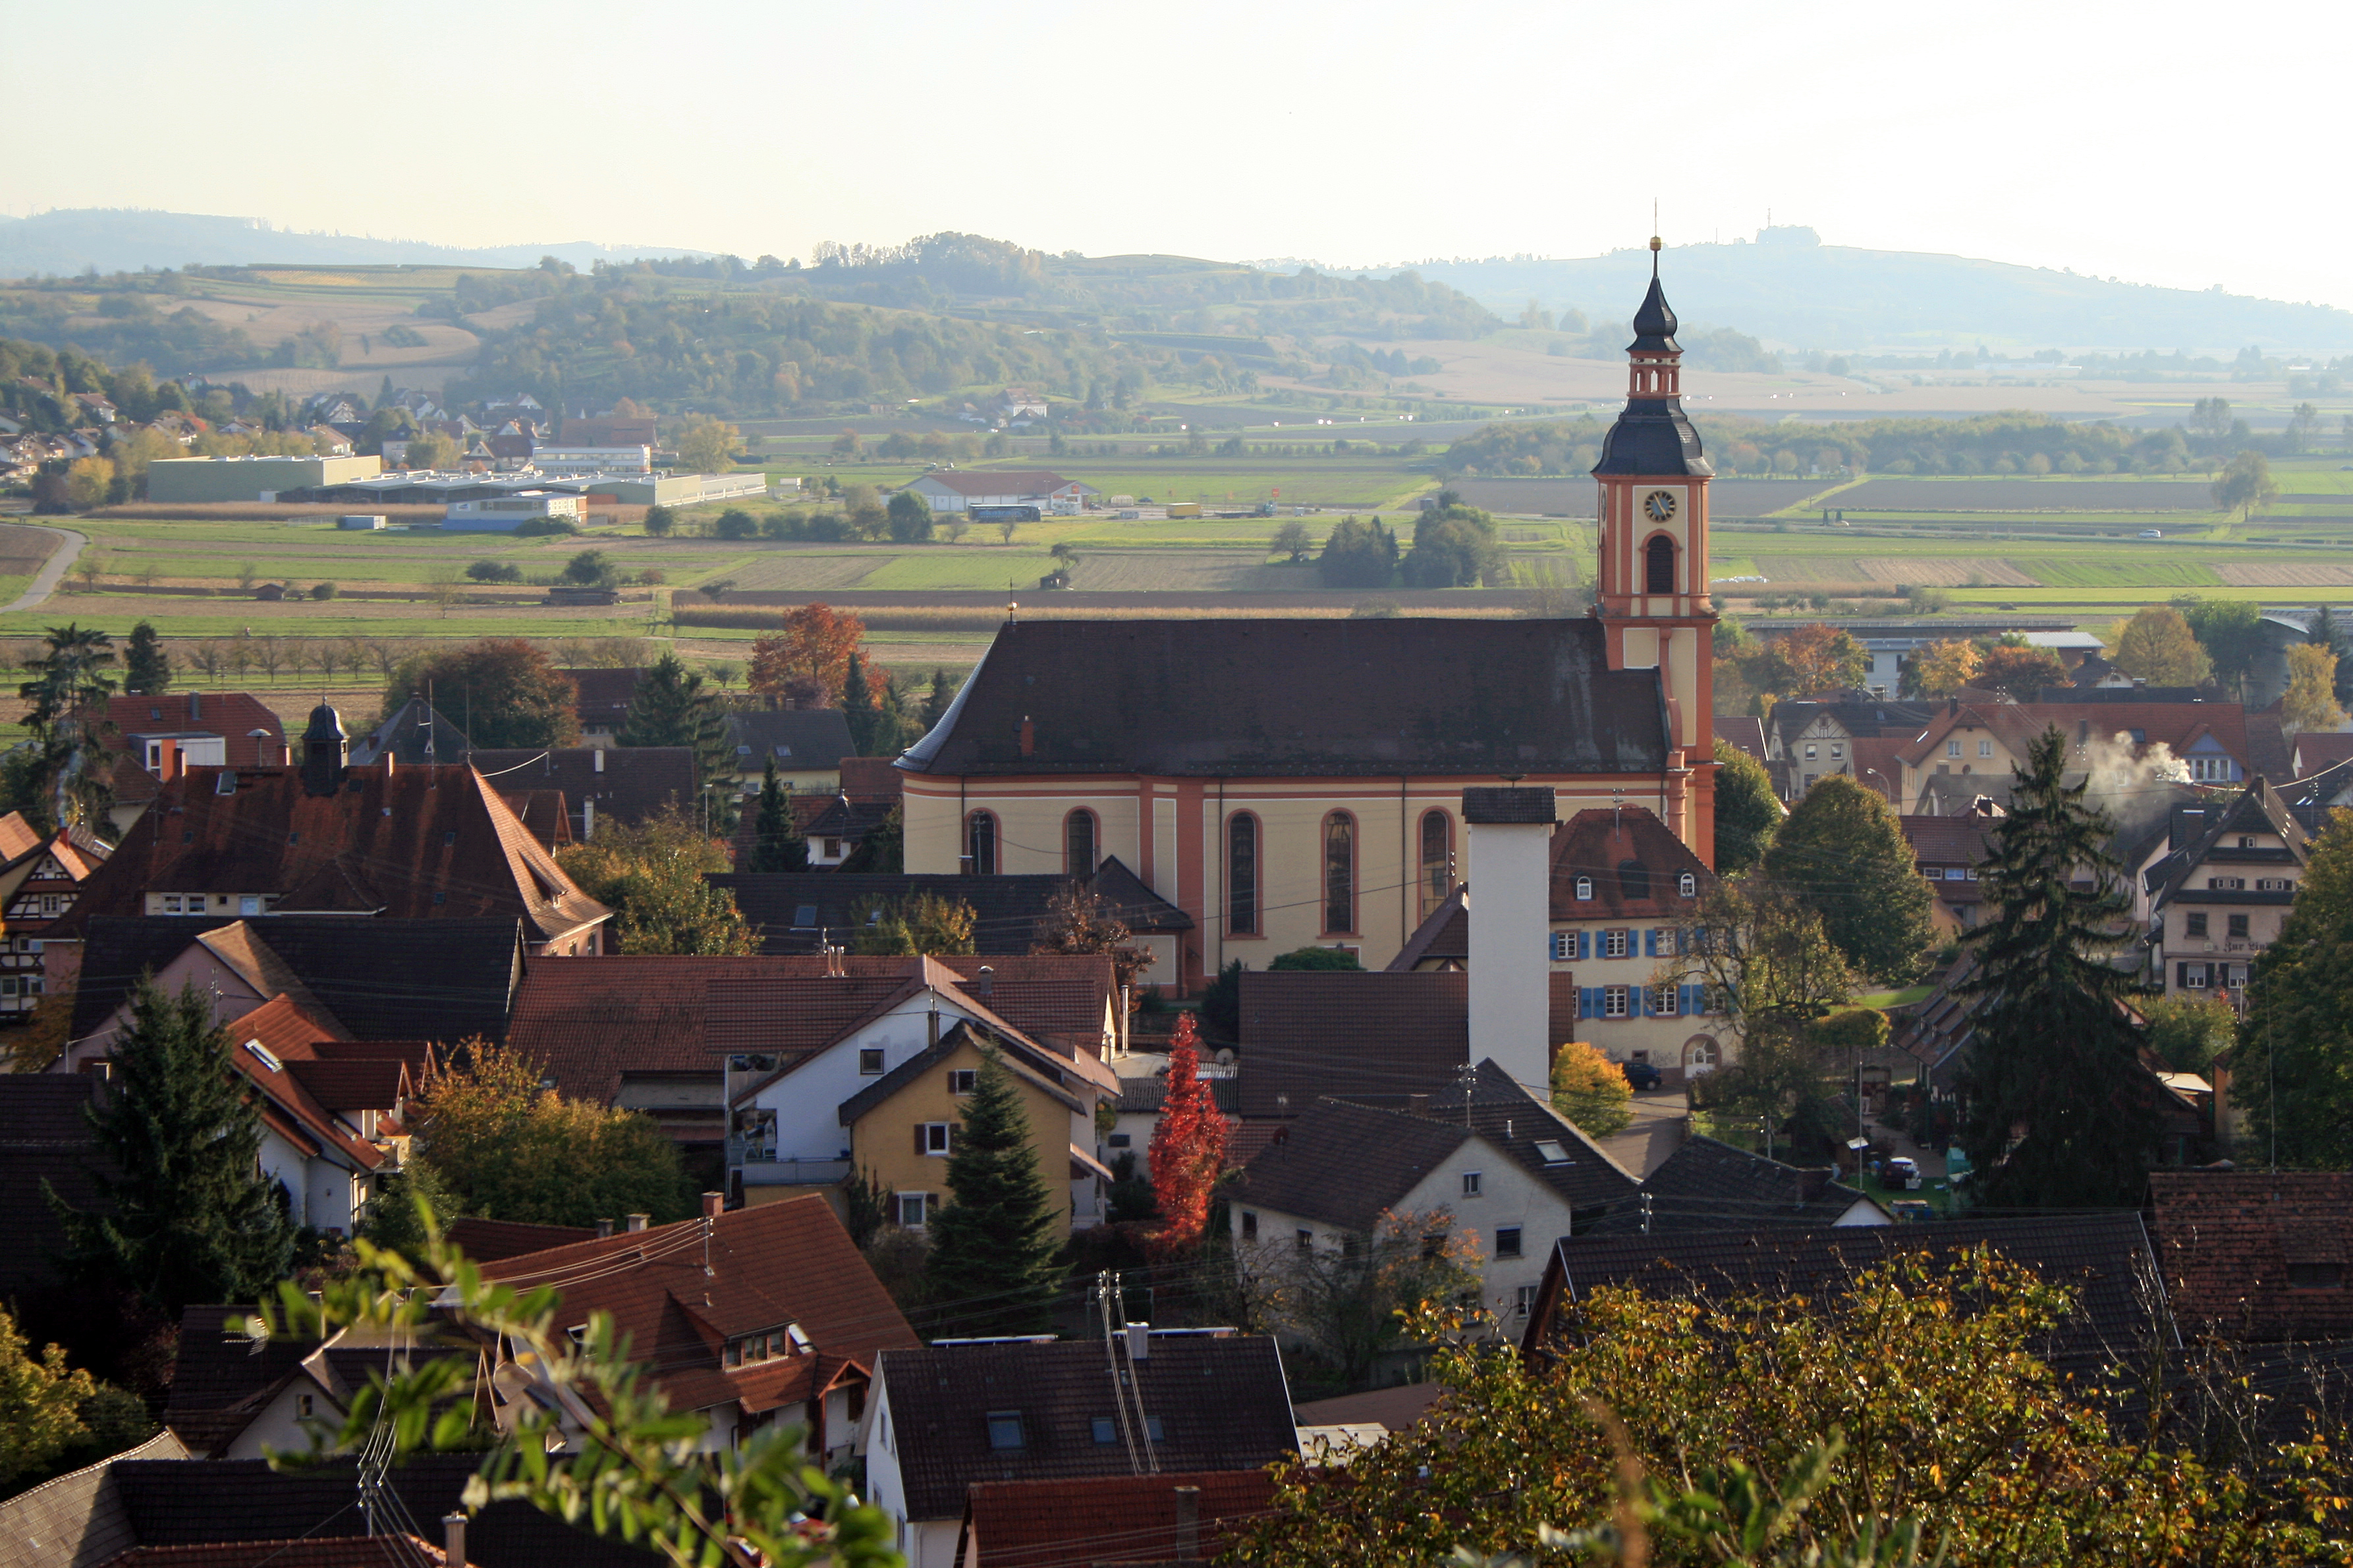 St. Brigitta in Niederschopfheim